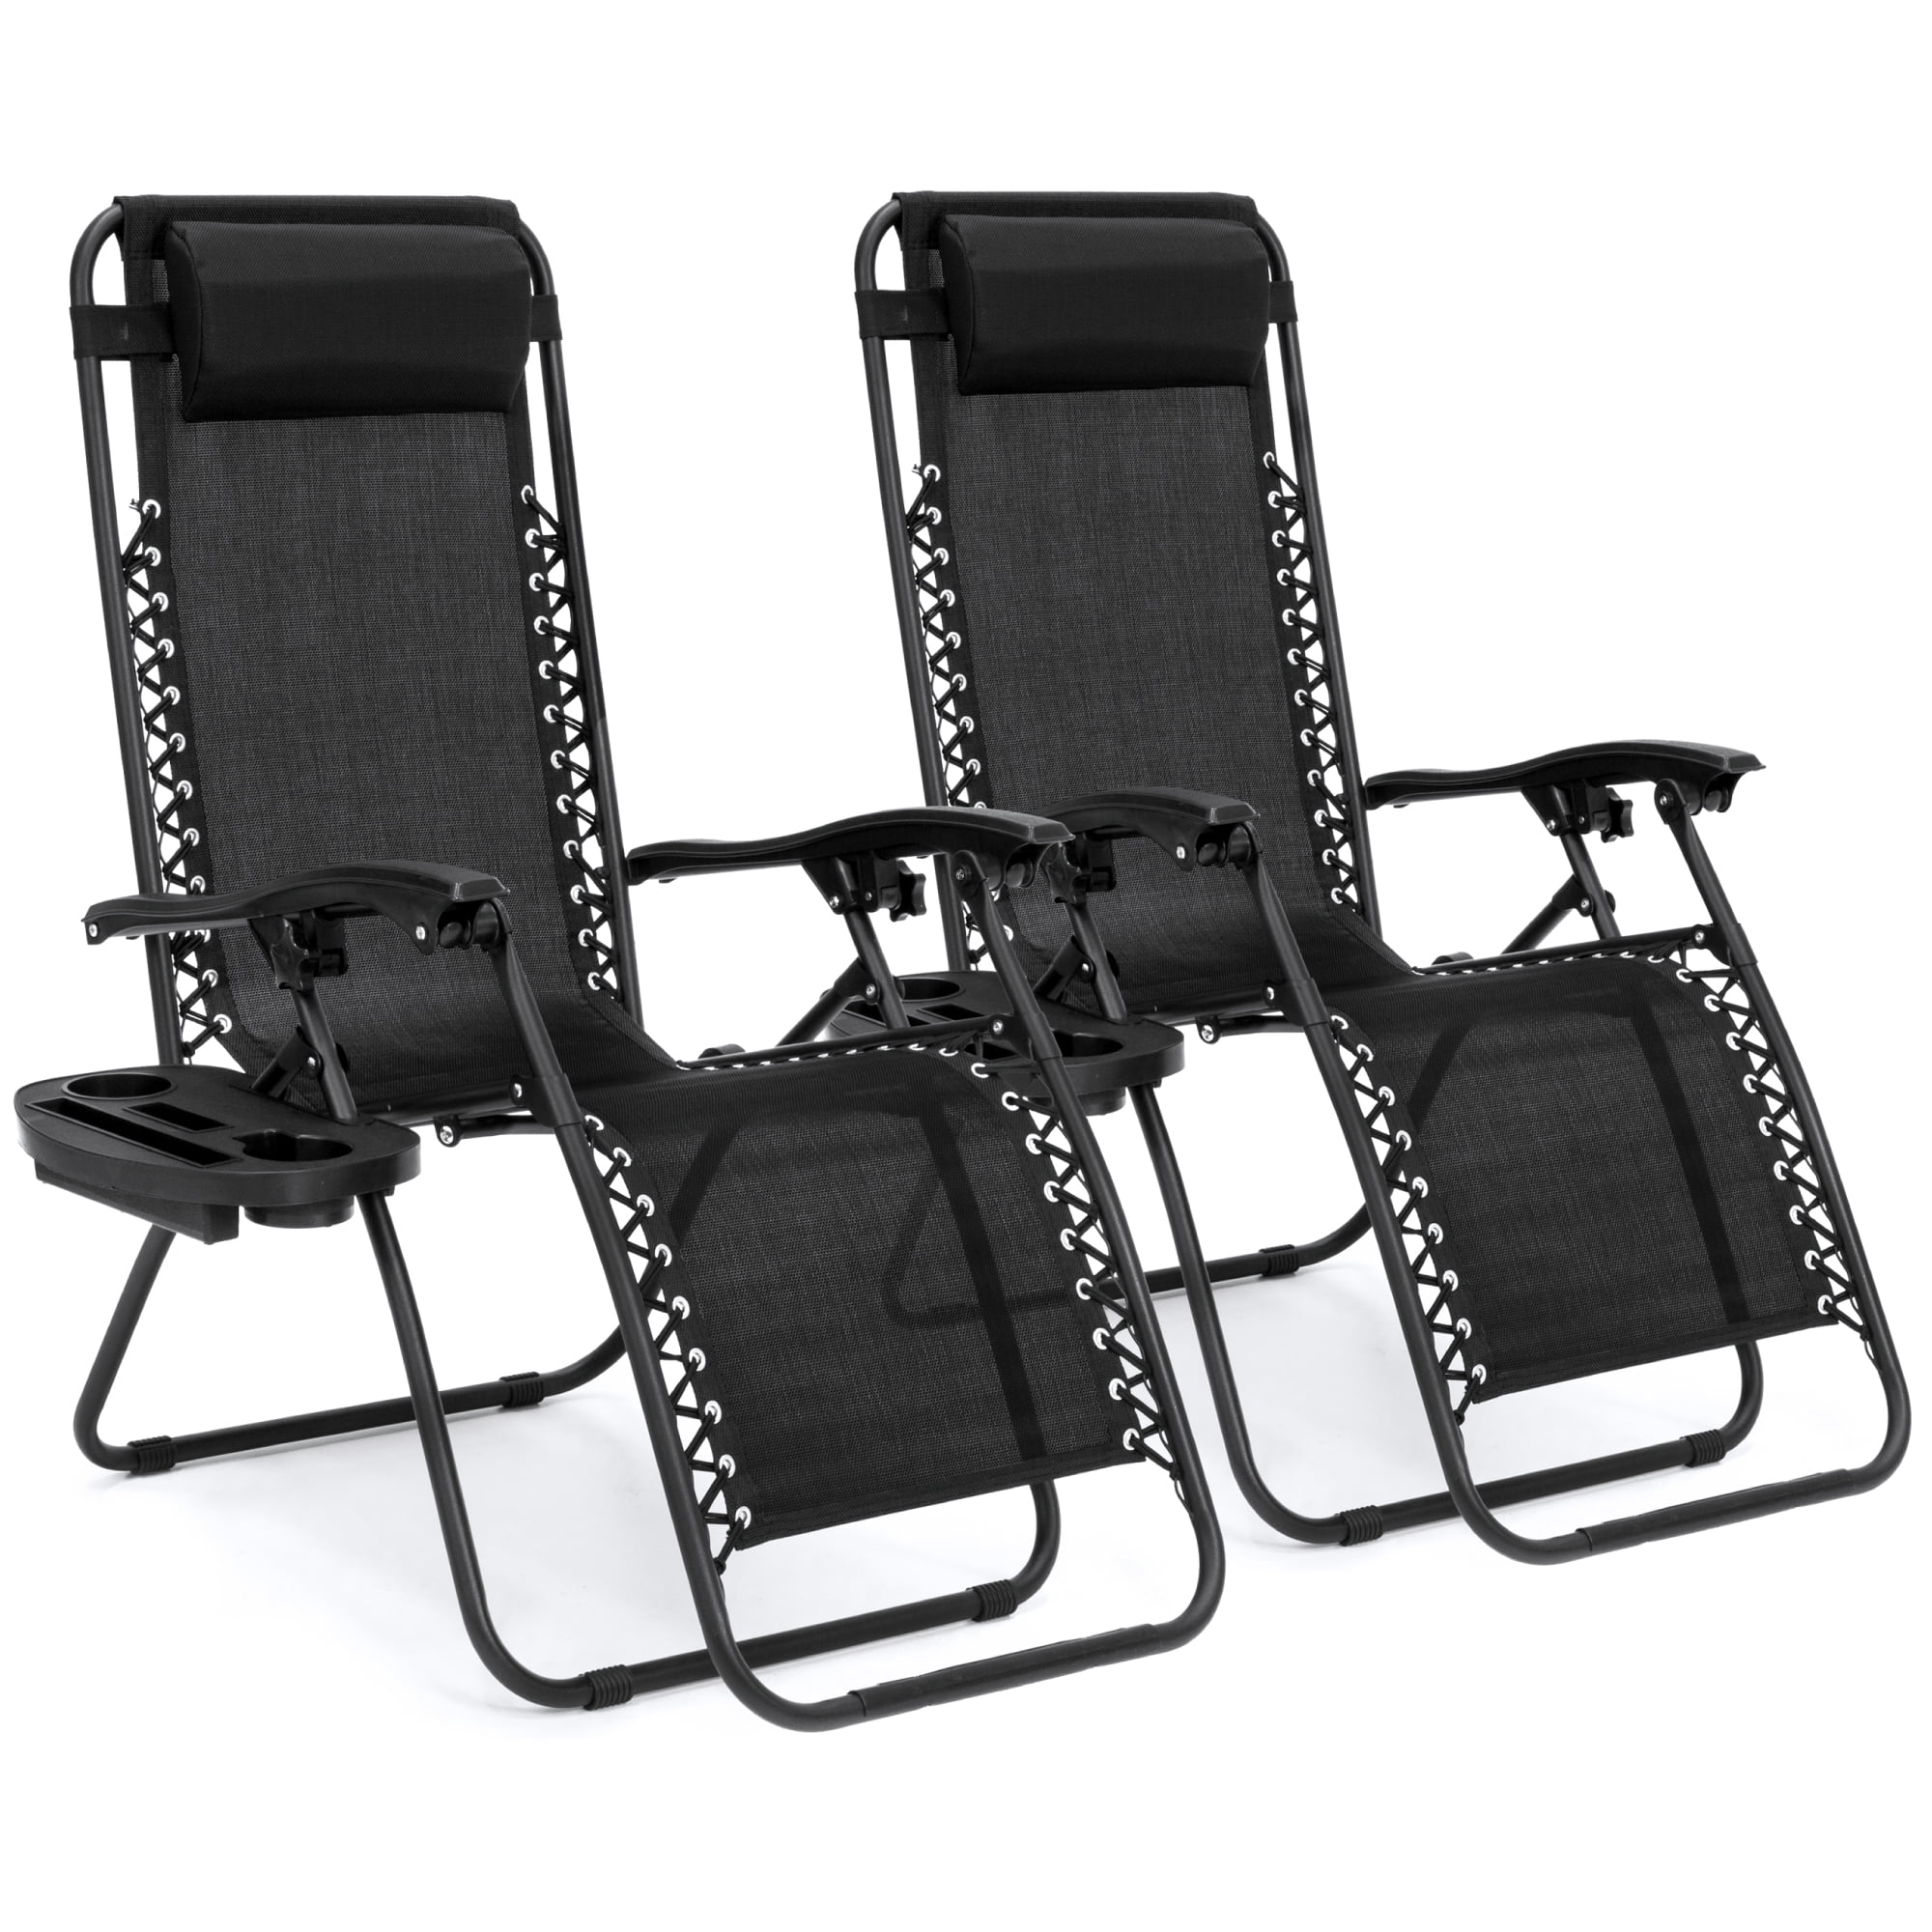 Zero Gravity Recliner Chair Outdoor Patio Adjustable Bed Headrest Pillow Black 